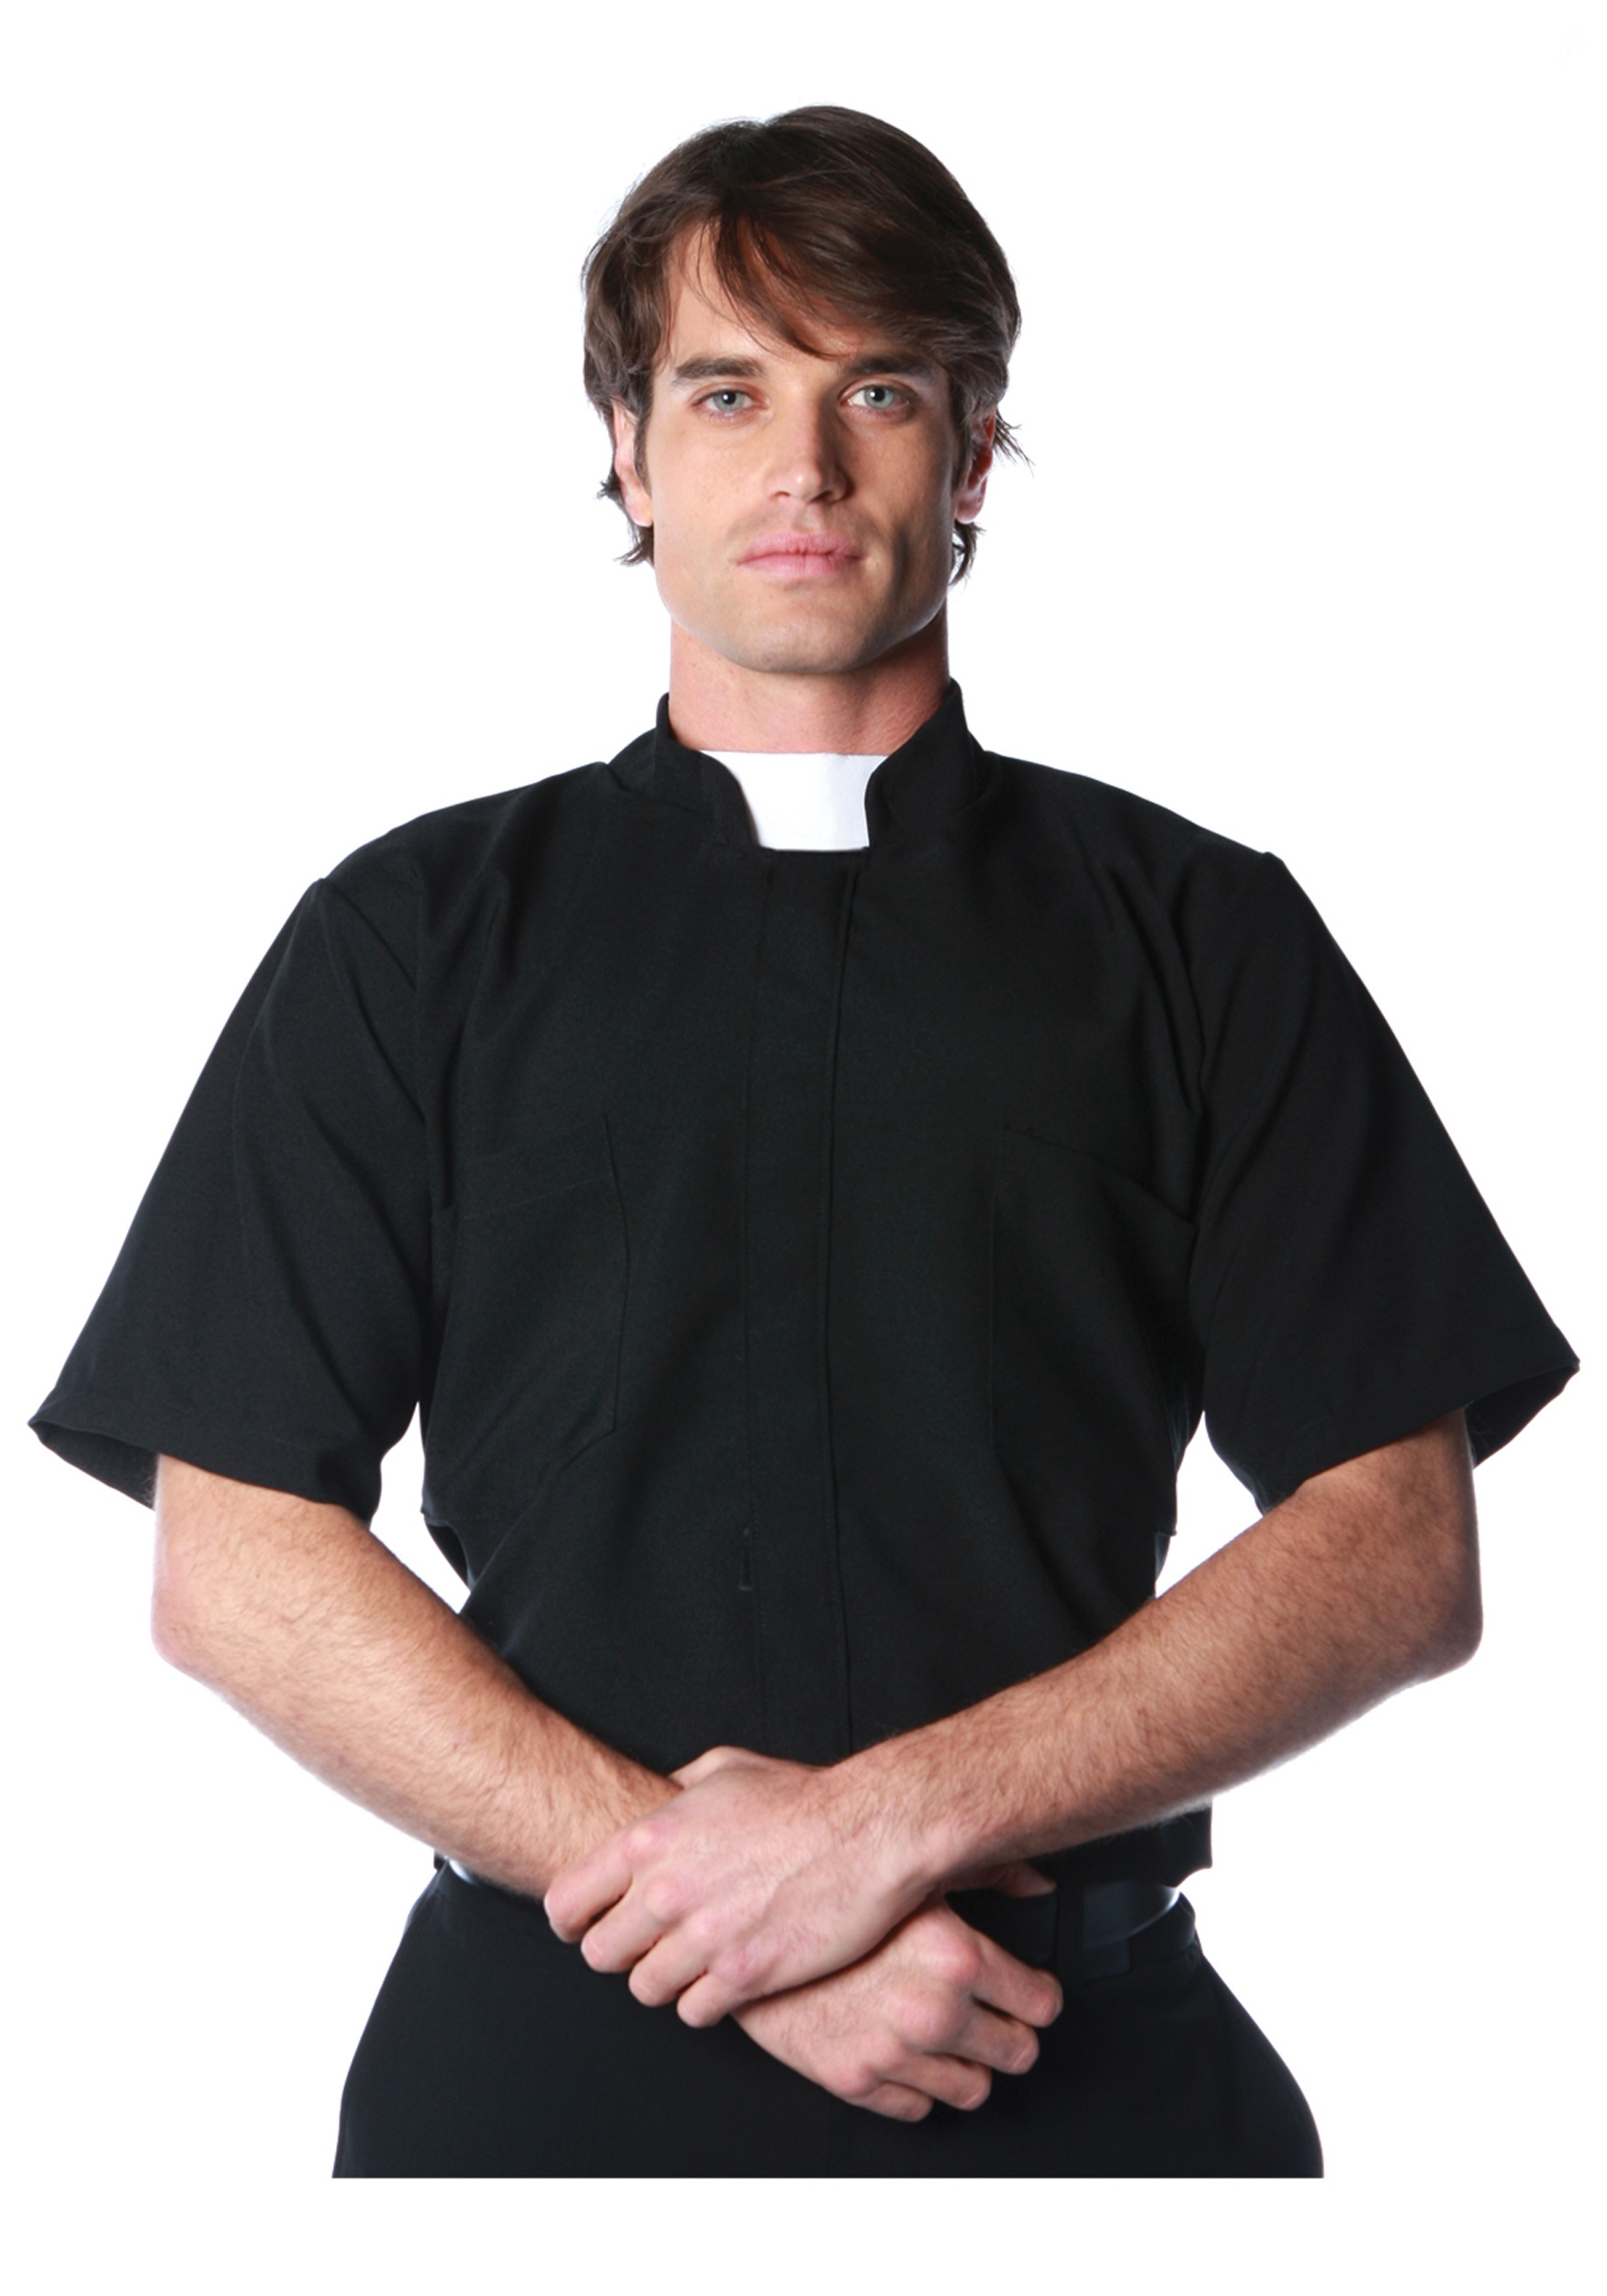 Pri est. Ряса католического священника. Костюм Падре на Хэллоуин. Католик в рубашке. Одеяние священника Католика.